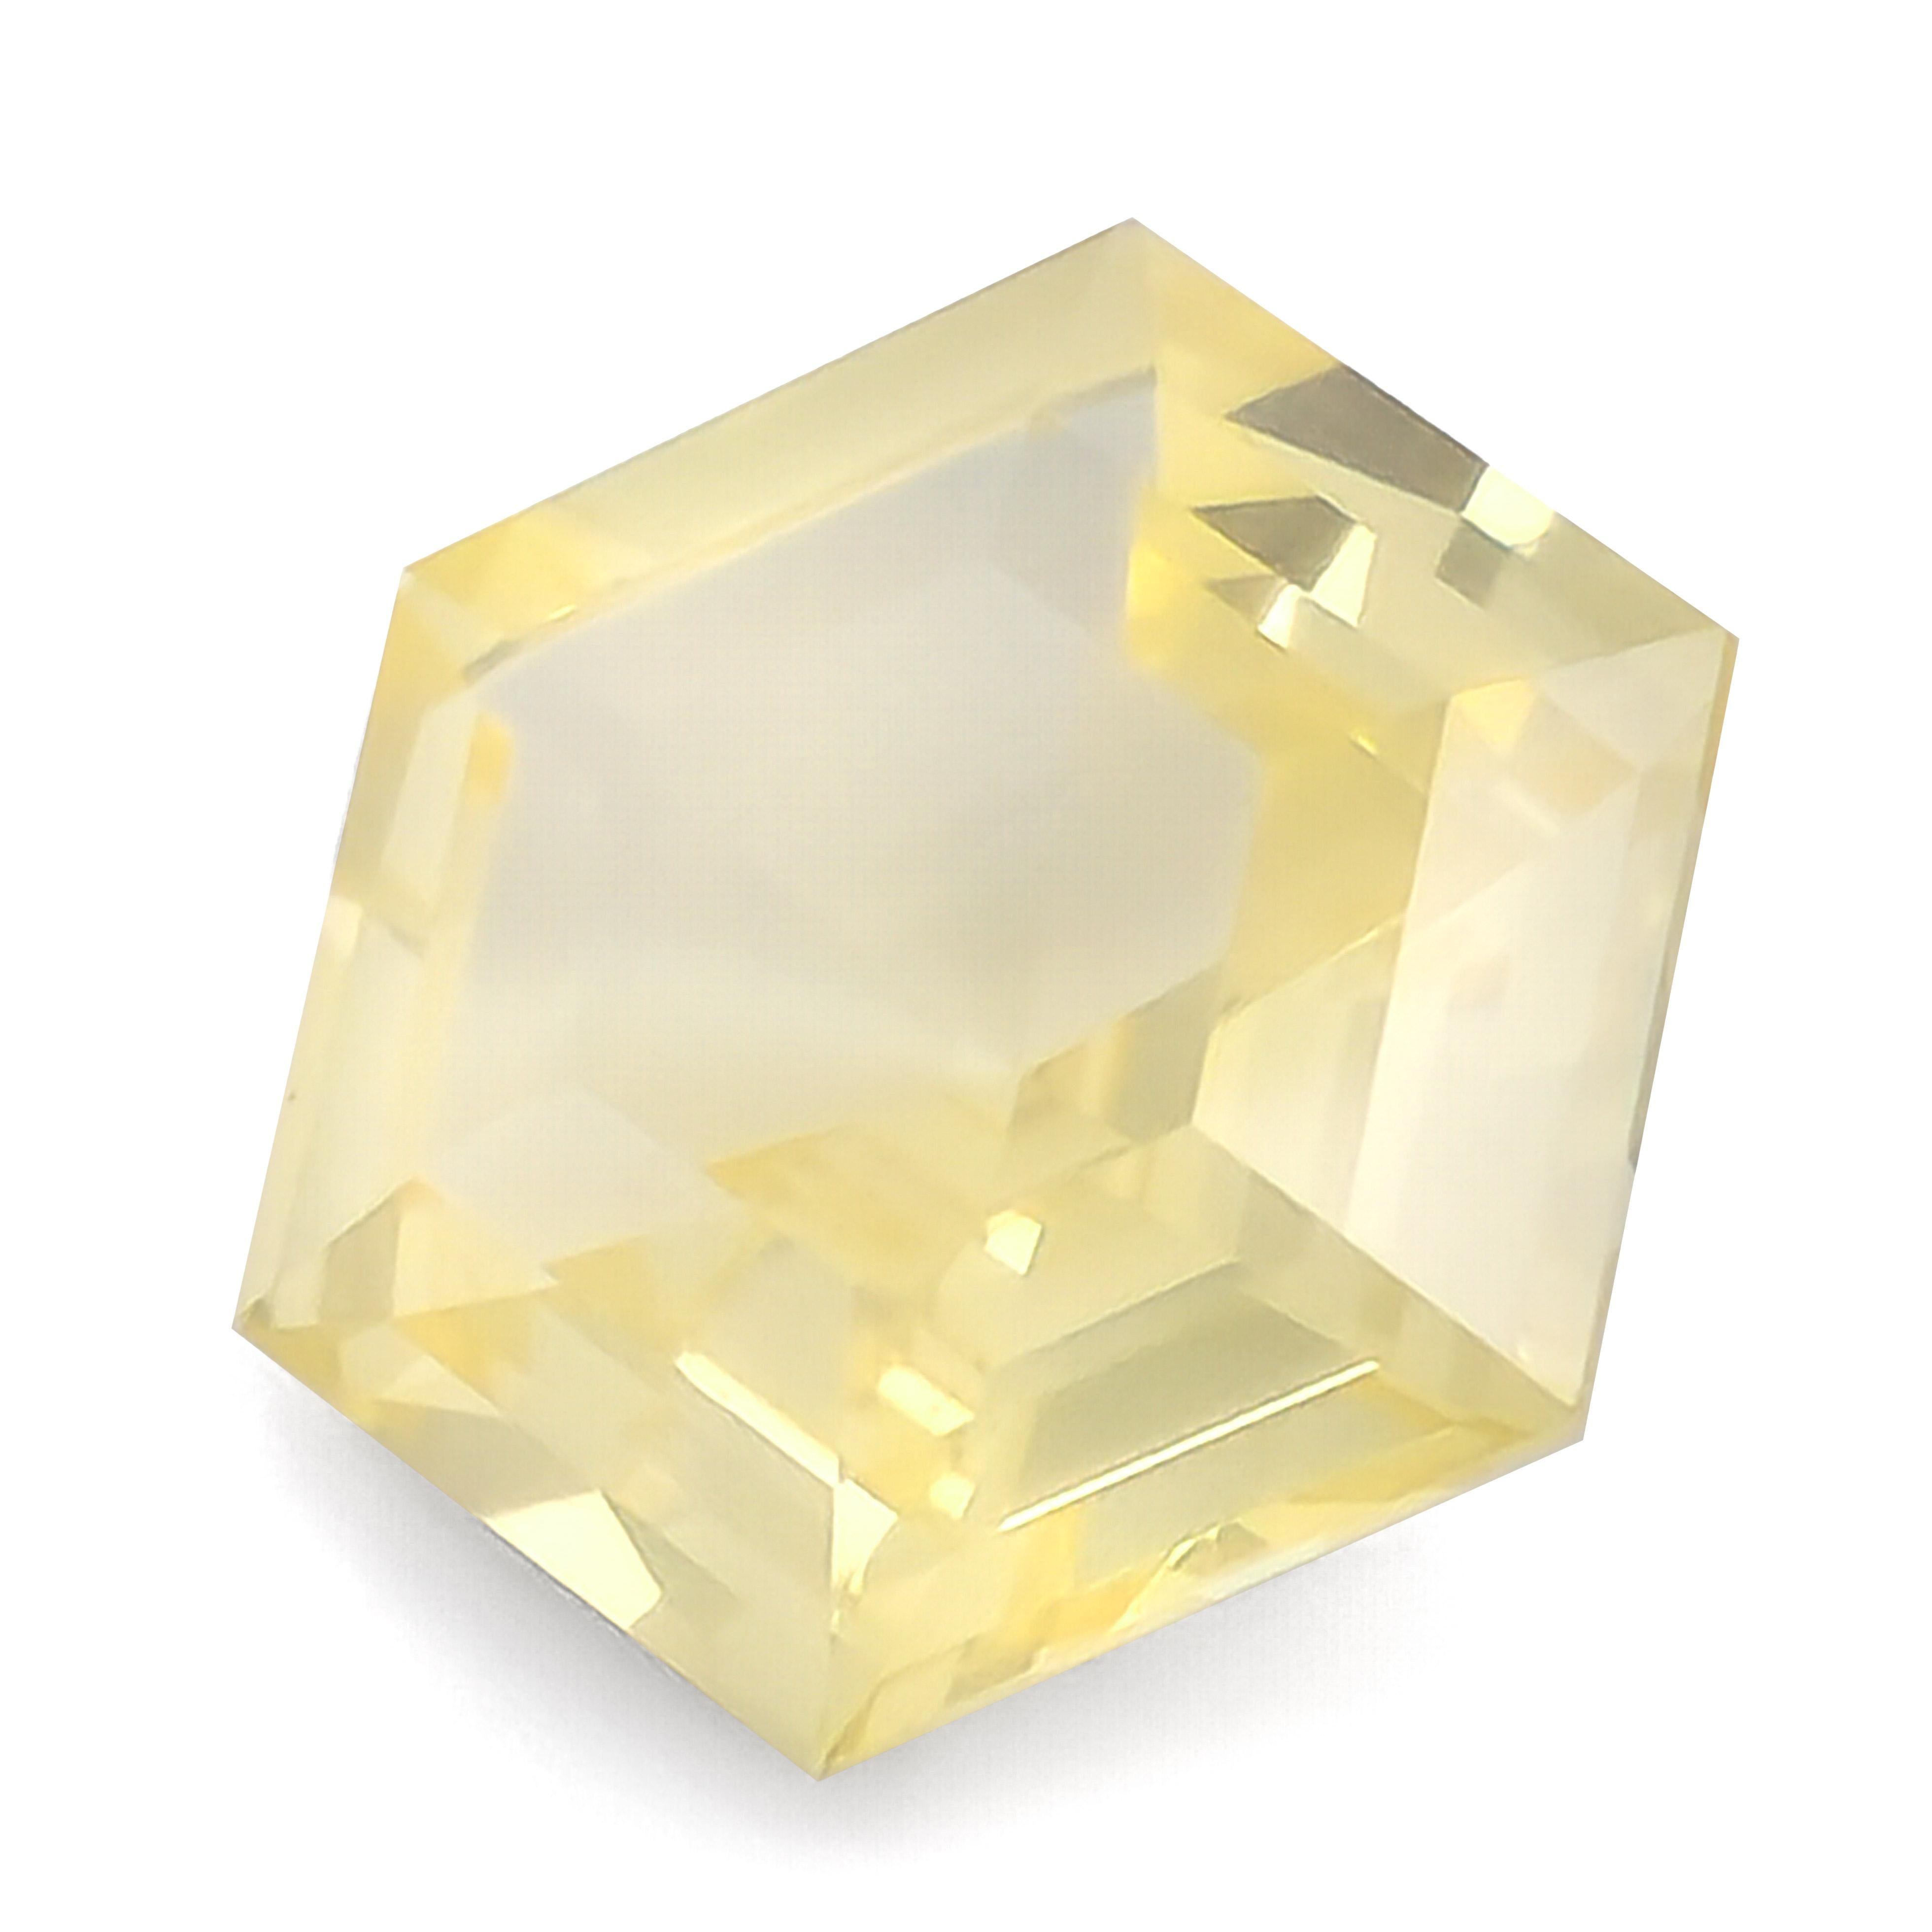 Hexagon Cut GIA Certified 5.76 Carats Heated Hexagonal Yellow Sapphire For Sale